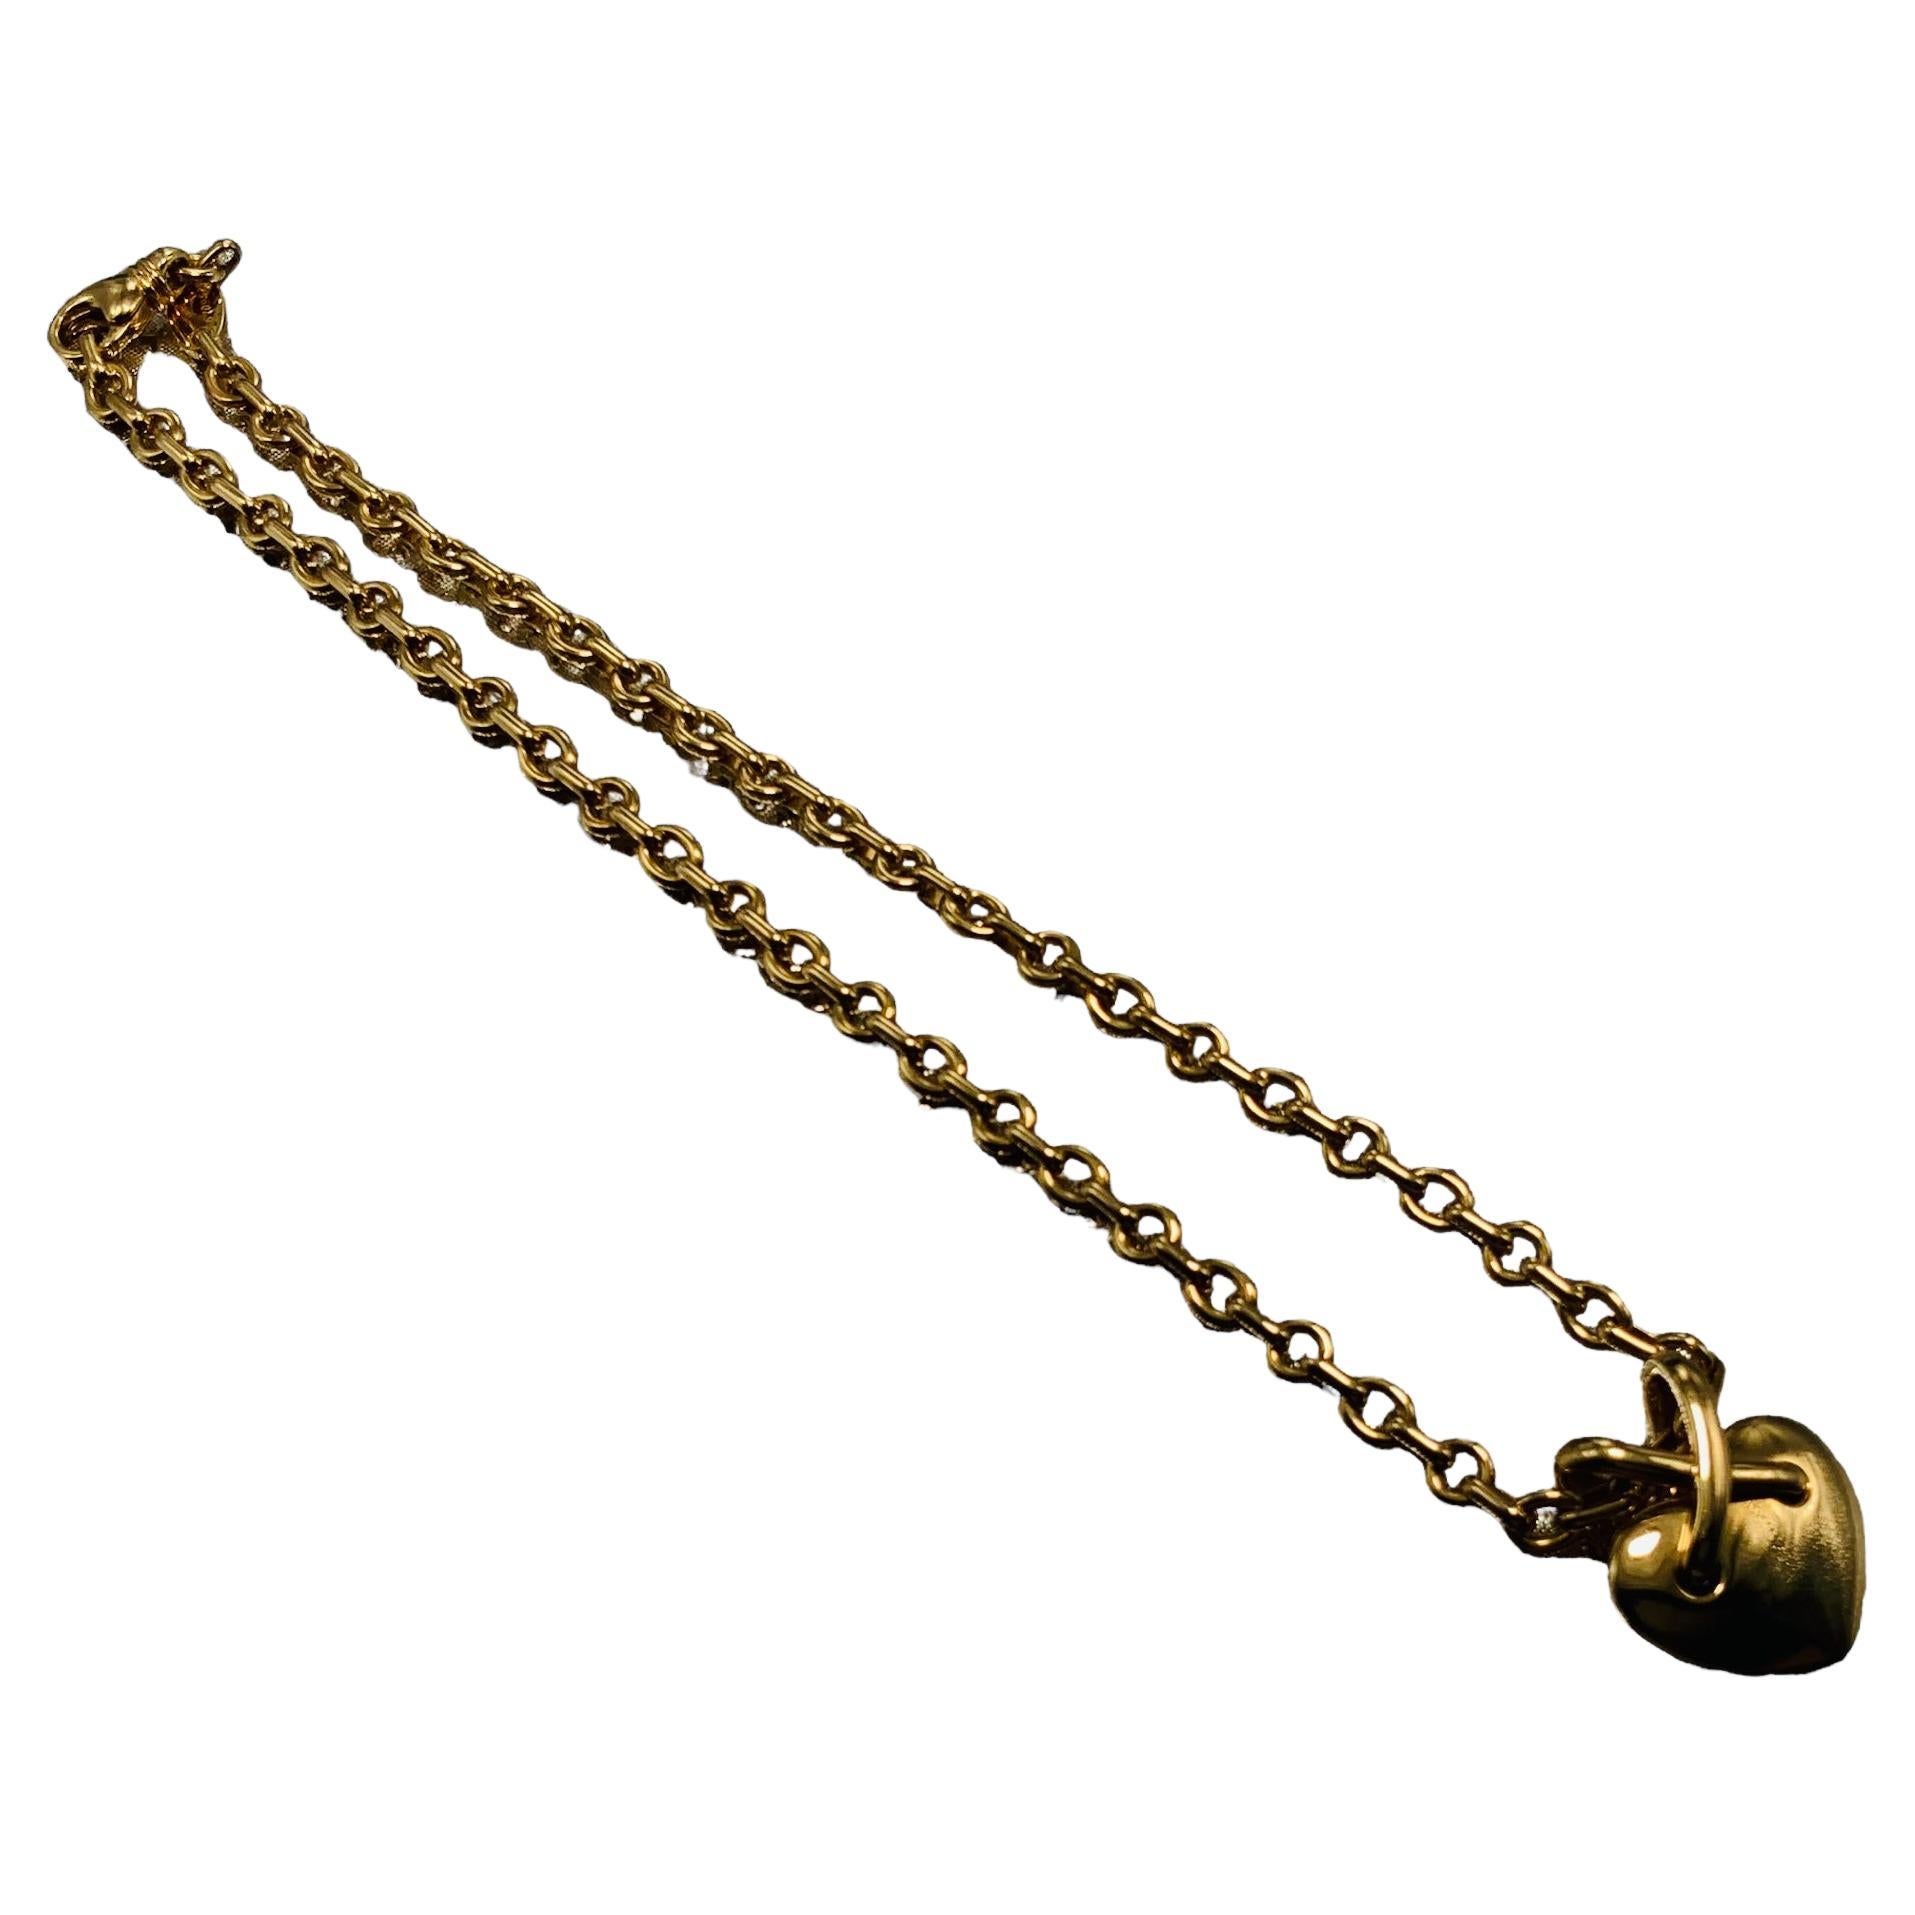  Chaumet, Paris Liens Heart 750 Gold Necklace  For Sale